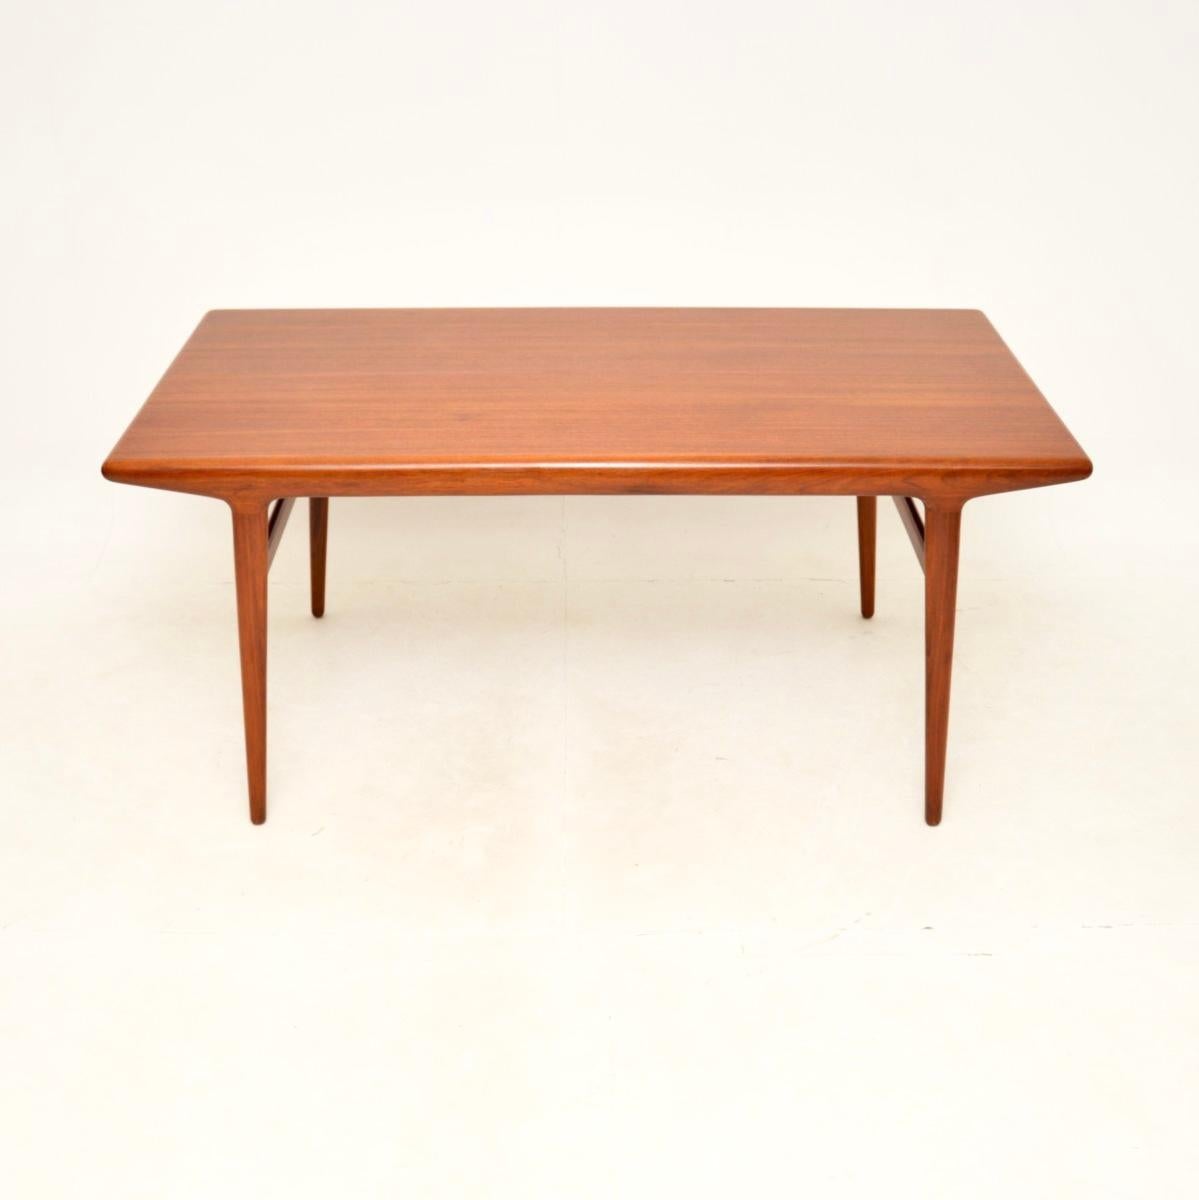 Ein stilvoller und sehr gut gemachter dänischer Teakholz Esstisch / Schreibtisch von Niels Moller. Dieser wurde in Dänemark von der JLM Mobelfabrik hergestellt und stammt aus den 1960er Jahren.

Die Qualität ist hervorragend, das Design ist